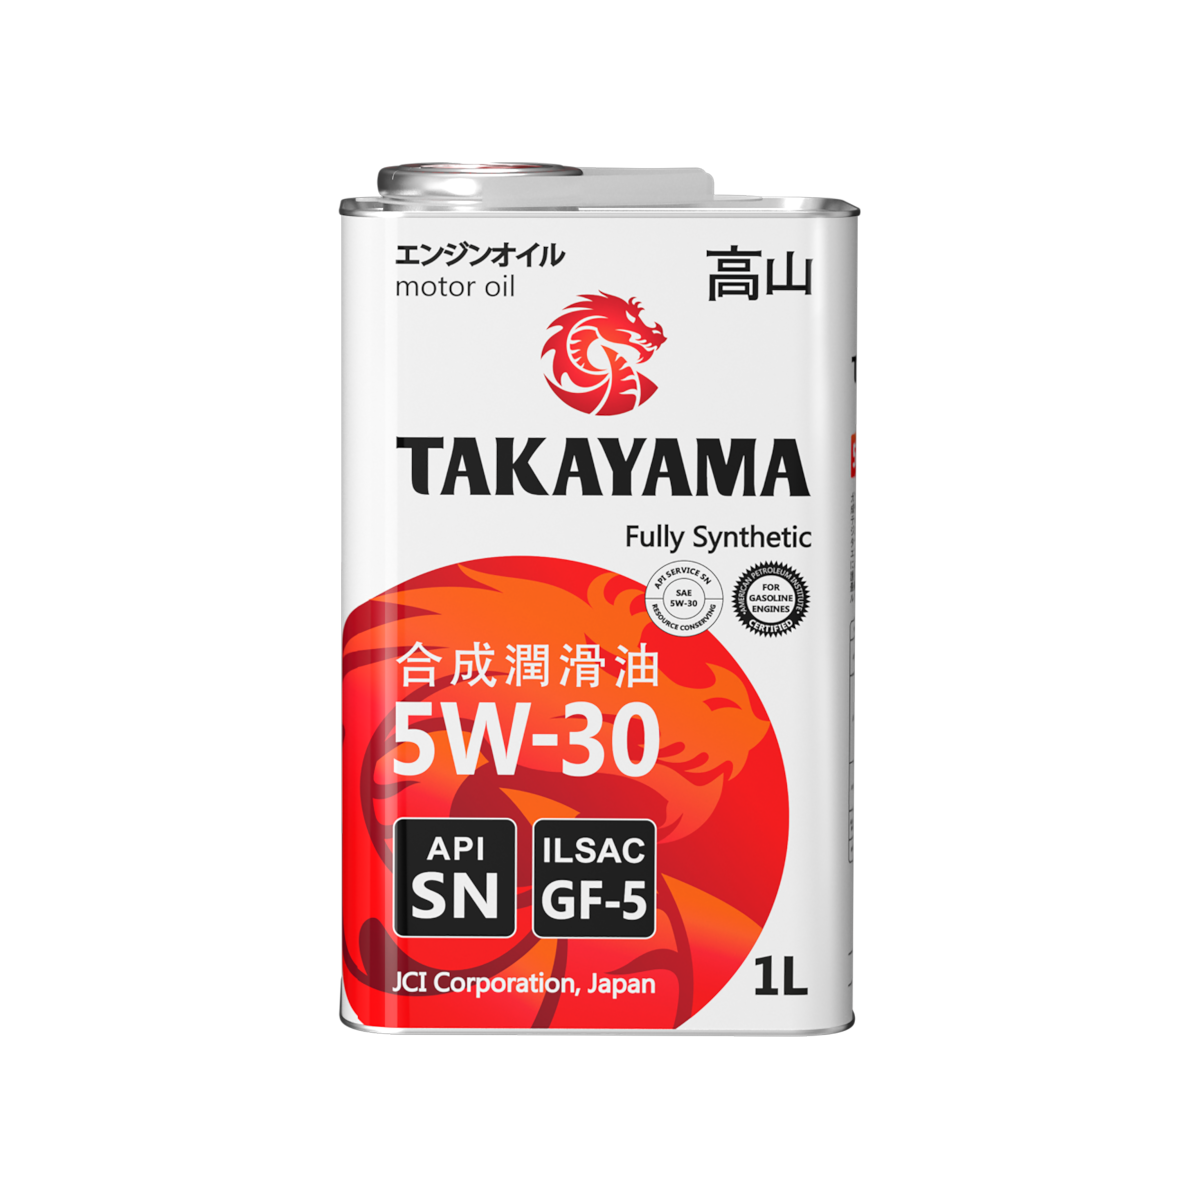 Масло такаяма 5w30 купить. Takayama 5w30 SN gf-5. Takayama 5w30 gf5. Масло моторное Takayama SAE 5w-30 ILSAC gf-5,API SN 4л. Takayama 5w-30 ILSAC gf-5, API SN (4л).